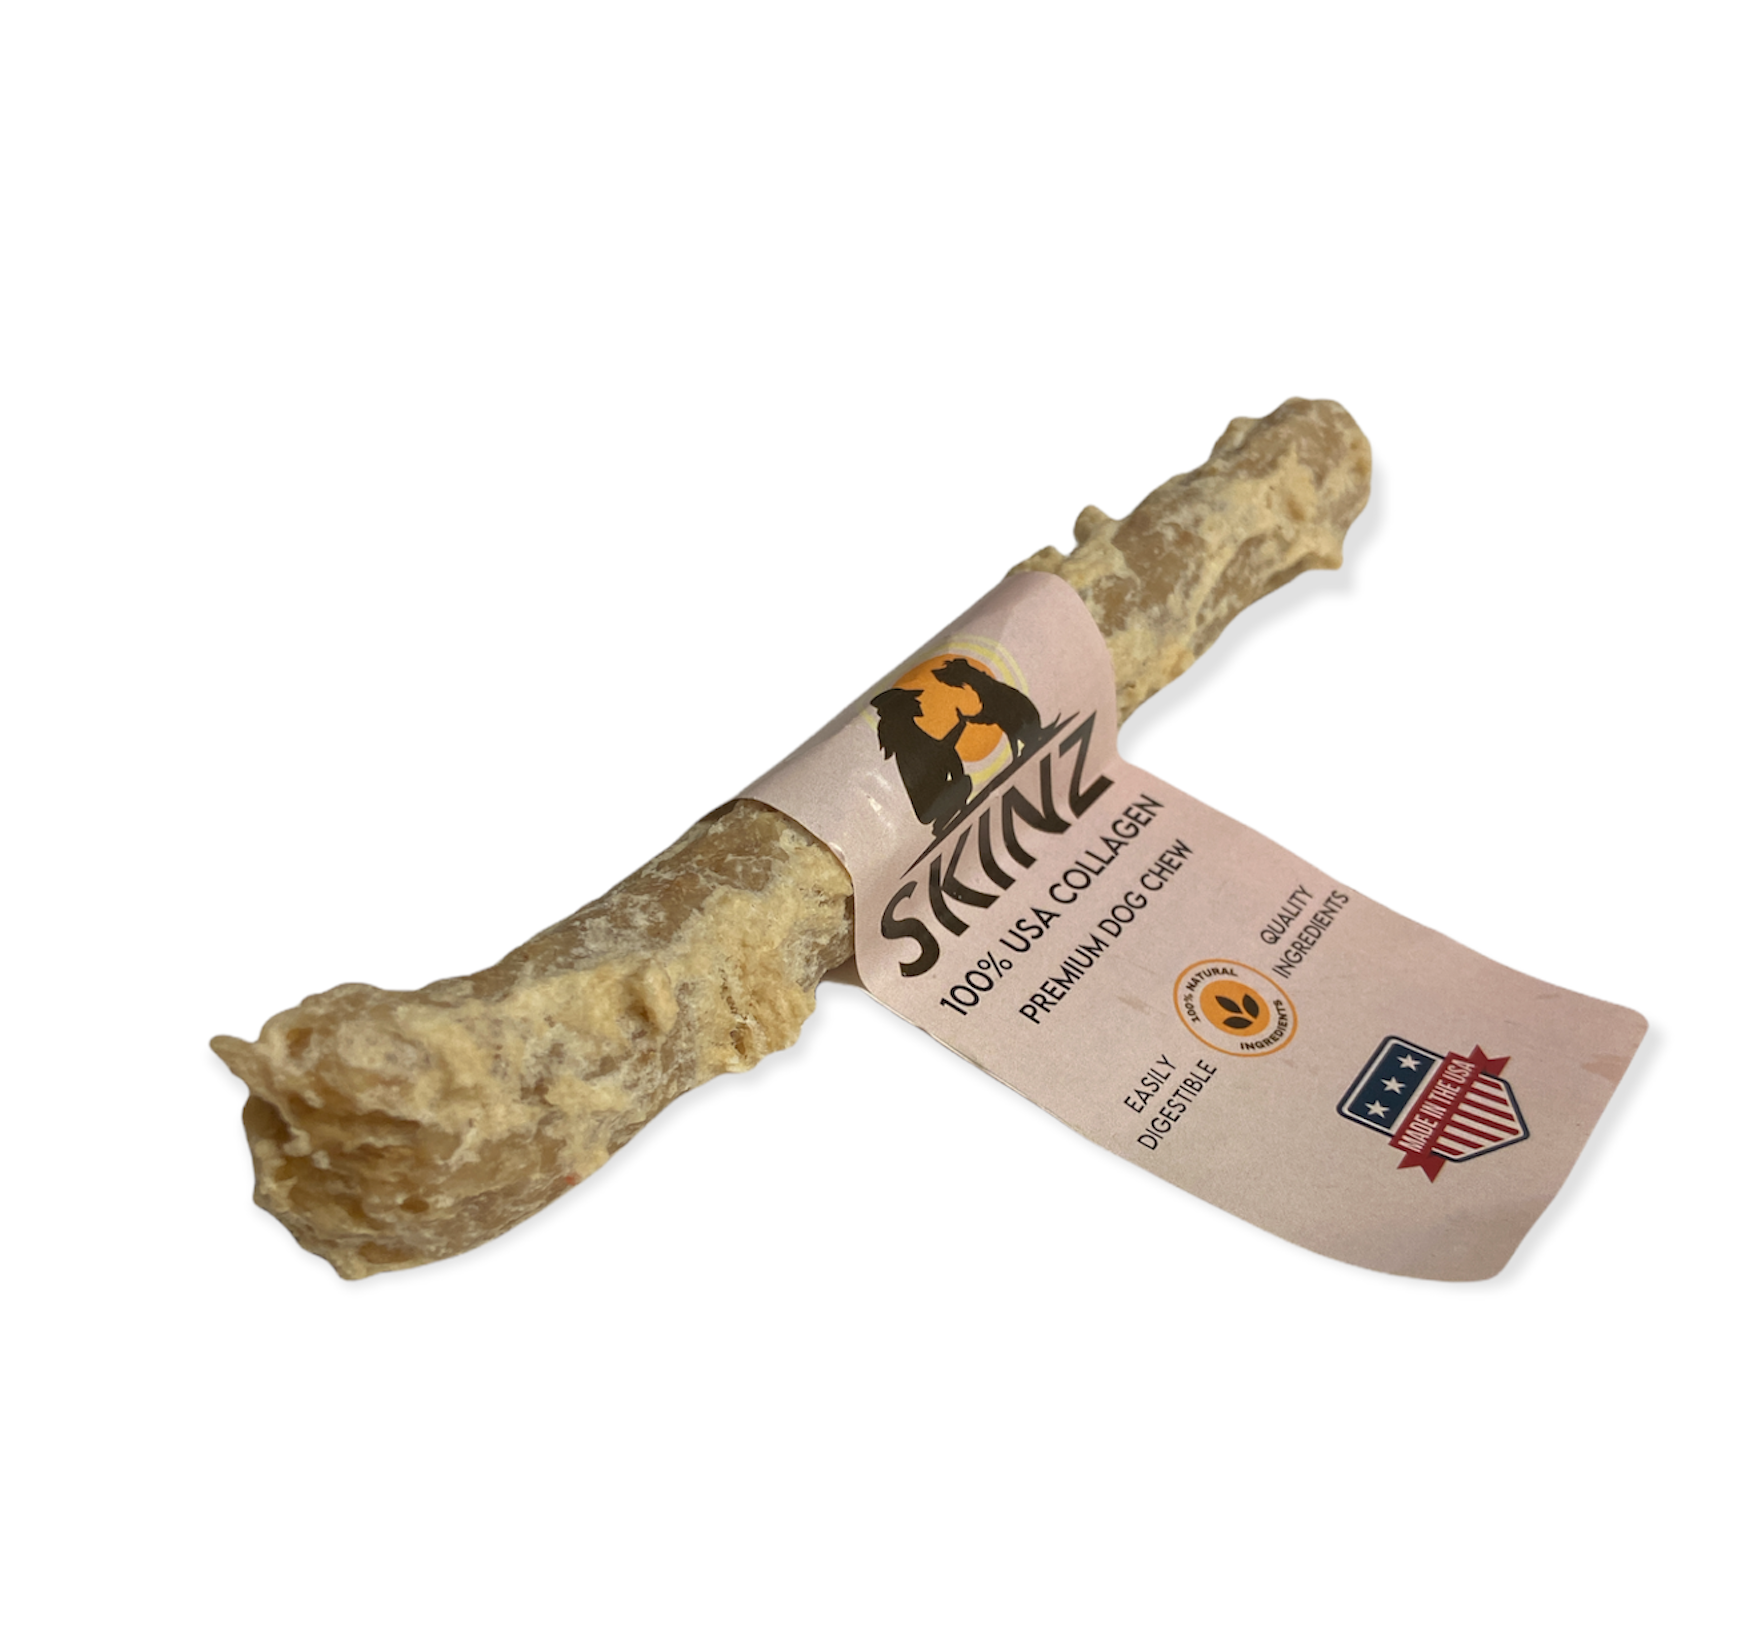 Skinz Bully Stick Flavored 100% Collagen Munchy Dog Chew